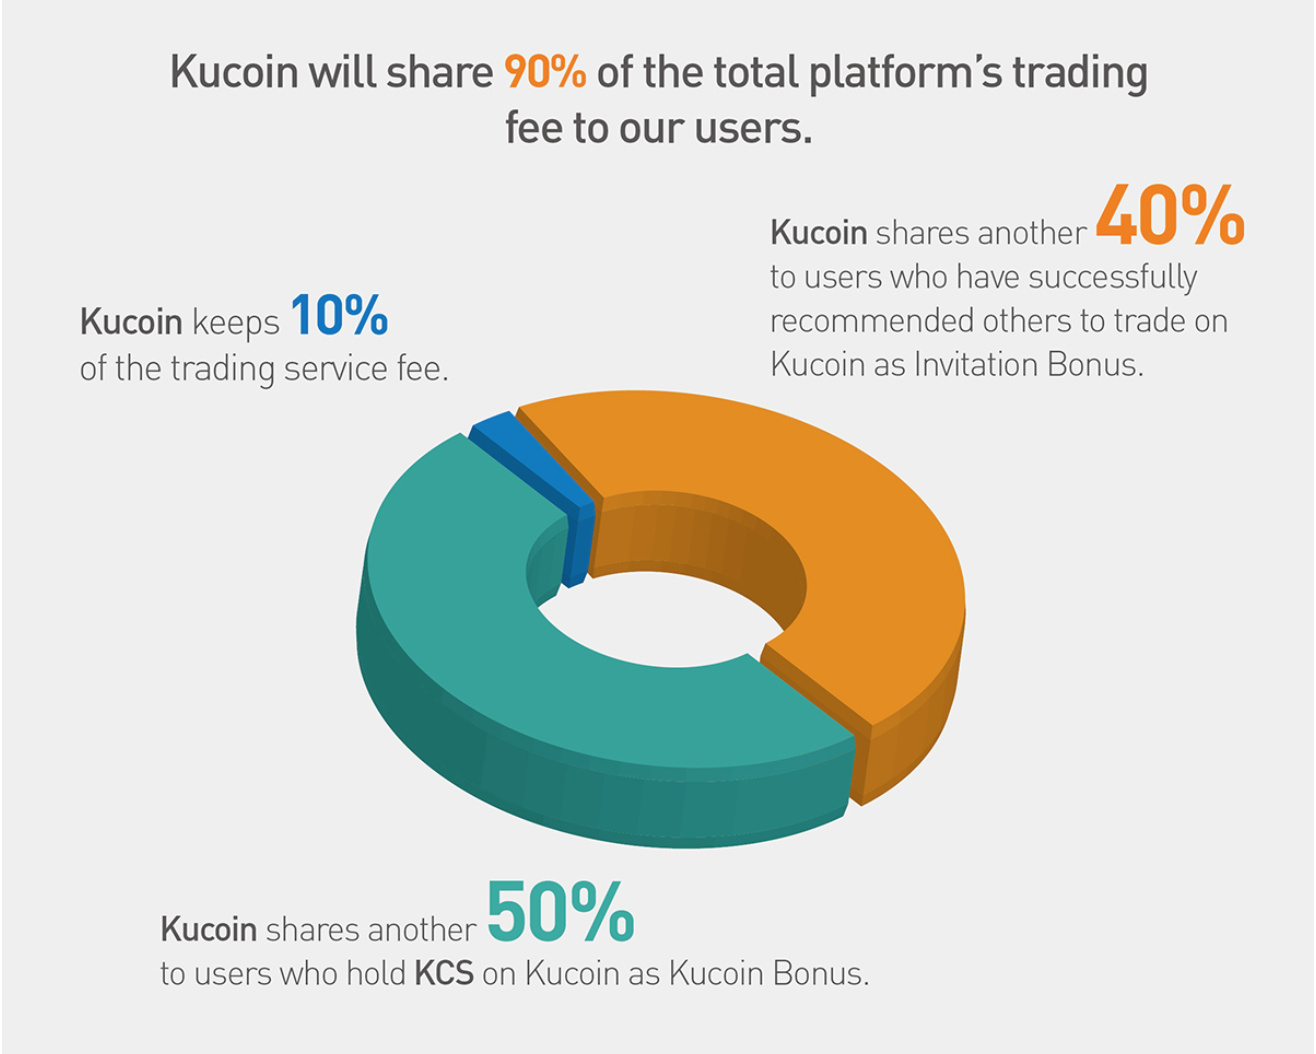 KuCoin Shares: jouw vroegtijdig pensioen? Op dit moment kan het al lucratief zijn om te investeren in KuCoin shares. Op het moment van schrijven, kan je volgens de website van KuCoin zelf al 38 dollar per dag verdienen als je in het bezit bent van 15.000 KuCoin shares. Dit aantal lijkt echter alleen maar te stijgen, omdat het handelsplatform zeer sterk aan populariteit wint. Hoe populairder het platform, hoe groter jouw winsten. Zowel de waarde van je aandelen gaan omhoog als je verdiensten.  Daarnaast word je niet uitbetaald in dollars of euro’s, maar in de cryptomunten die op het platform verhandeld worden. Hoe populairder cryptocurrency’s worden (en zoals je in dit artikel kunt lezen, staan we nog in de begindagen), hoe groter jouw winsten zullen zijn.   Op dit moment accepteren ook nog eens de allergrootste exchanges geen gebruikers meer, waardoor veel gebruikers richting KuCoins gaan. Wij verwachten daarom dat KuCoin en daarmee KuCoin Shares. nog een zeer sterke stijging mee gaat maken. Als jij hiervan mee wilt profiteren, is het een idee om in KuCoin Shares te investeren. Uiteraard is dit geen advies en is het verstandig zelf eerst nog onderzoek te doen. Investeer nooit meer geld dan je bereid bent te verliezen. 